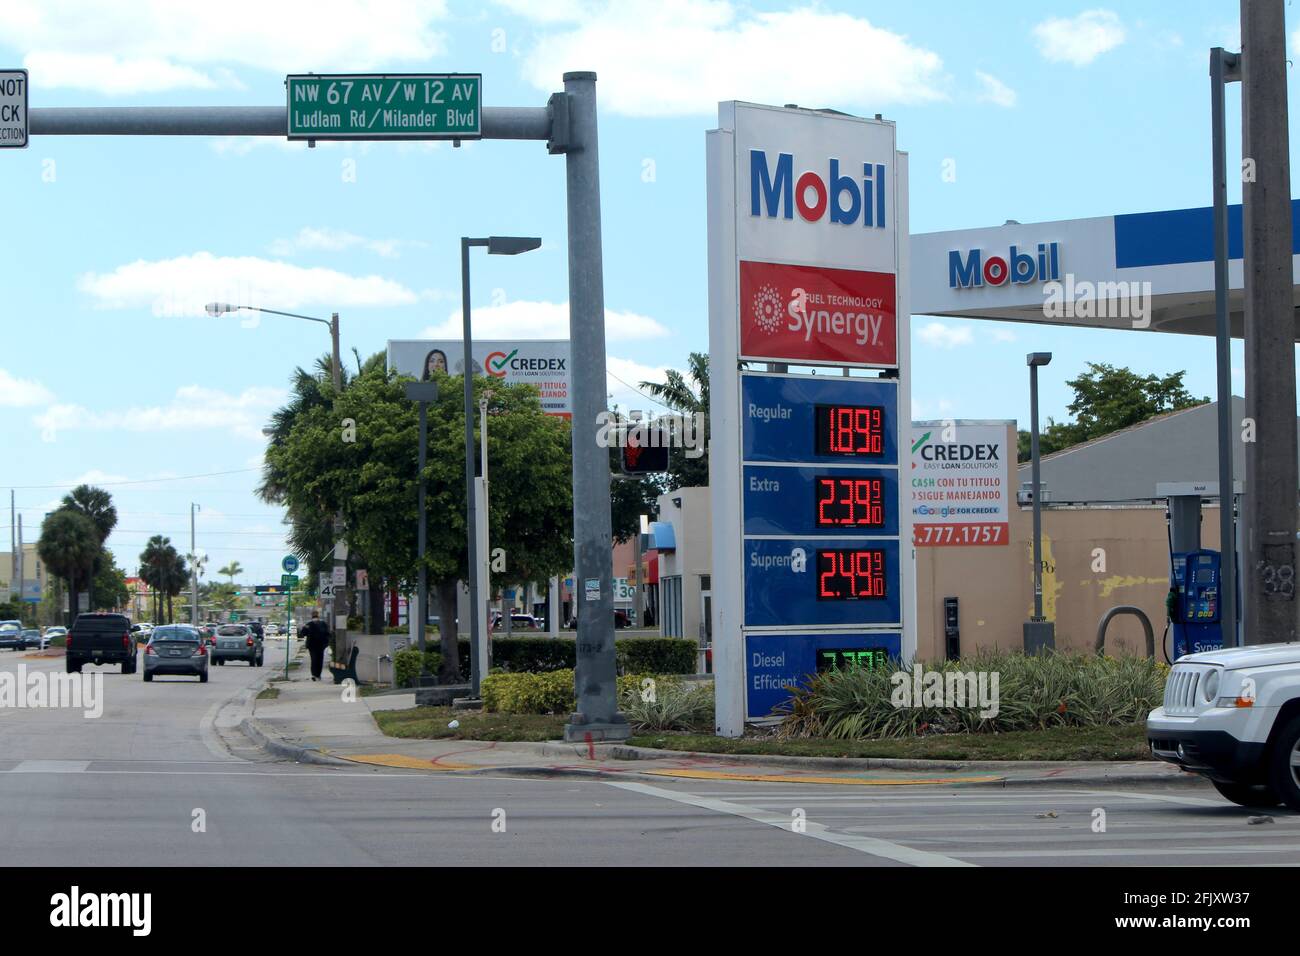 Die Mobil-Tankstelle in der 12. Avenue senkt die Preise aufgrund der Coronavirus-Pandemie, die auch als COVID-19 in der Stadt Hialeah, FL, bekannt ist, erheblich. Stockfoto